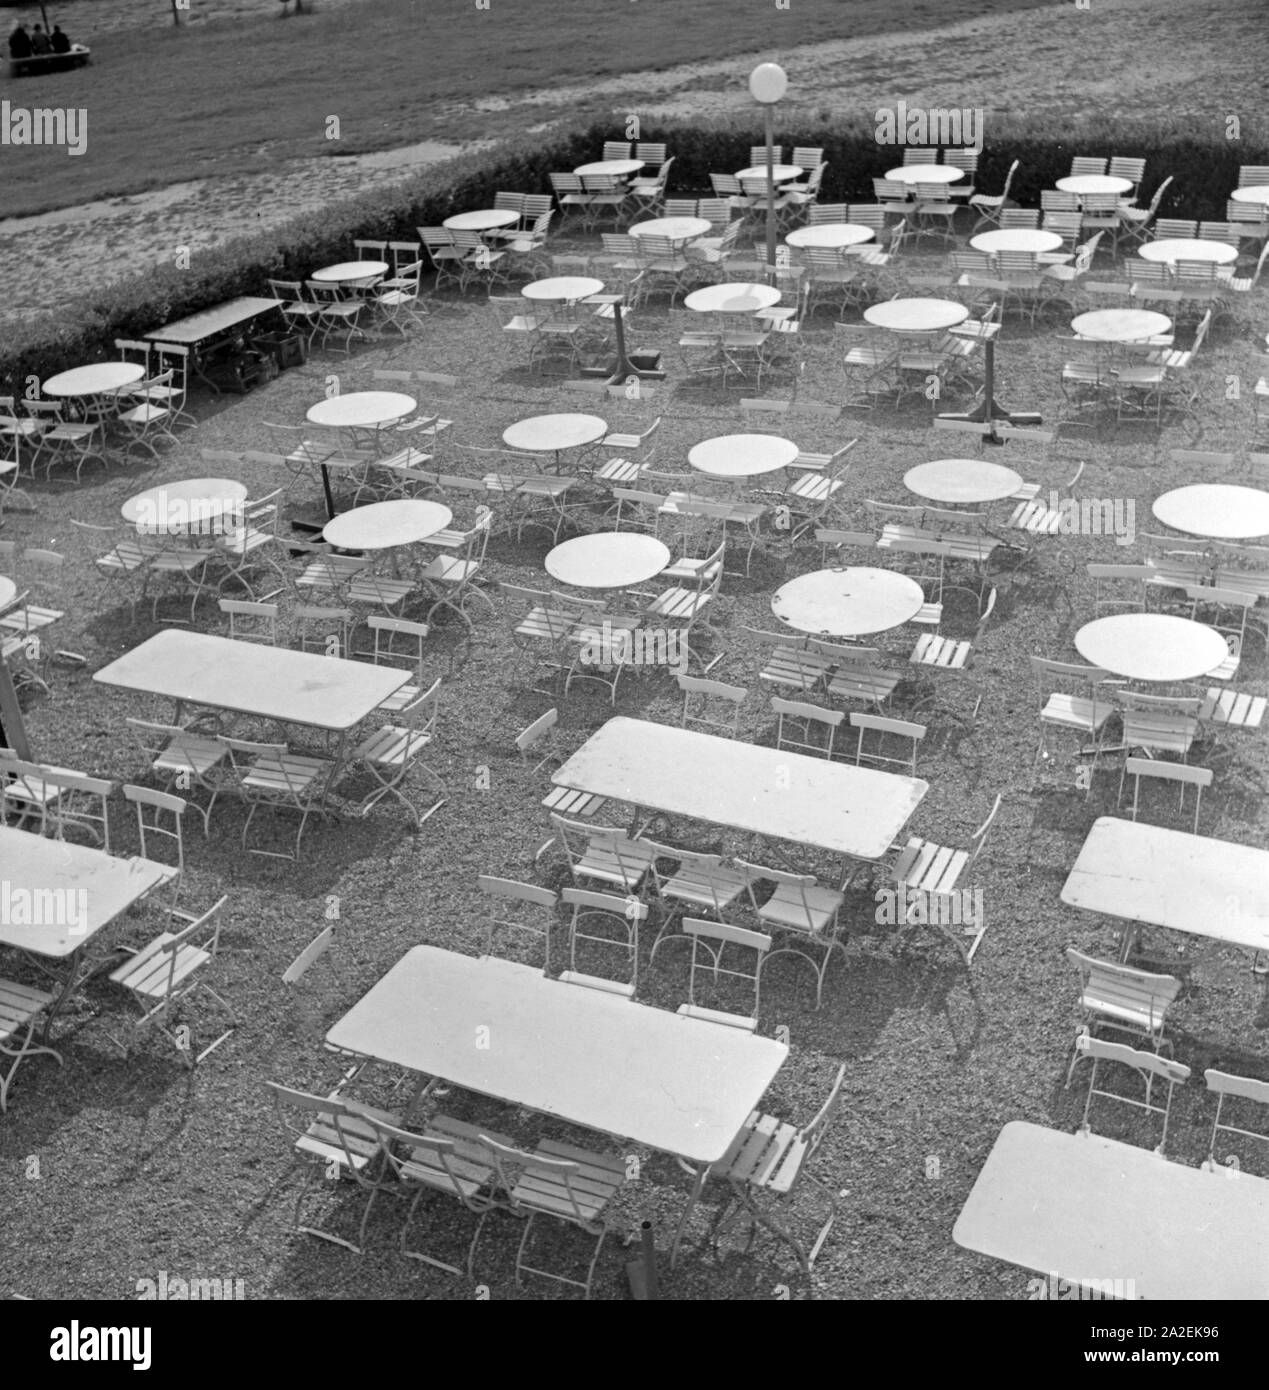 Tische und Stühle einer Außengastronomie bei Schloß solitudine di Stoccarda, Deutschland 1930er Jahre. I tavoli e le sedie di un ristorante all'aperto presso il castello Solitude a Stoccarda, Germania 1930s. Foto Stock